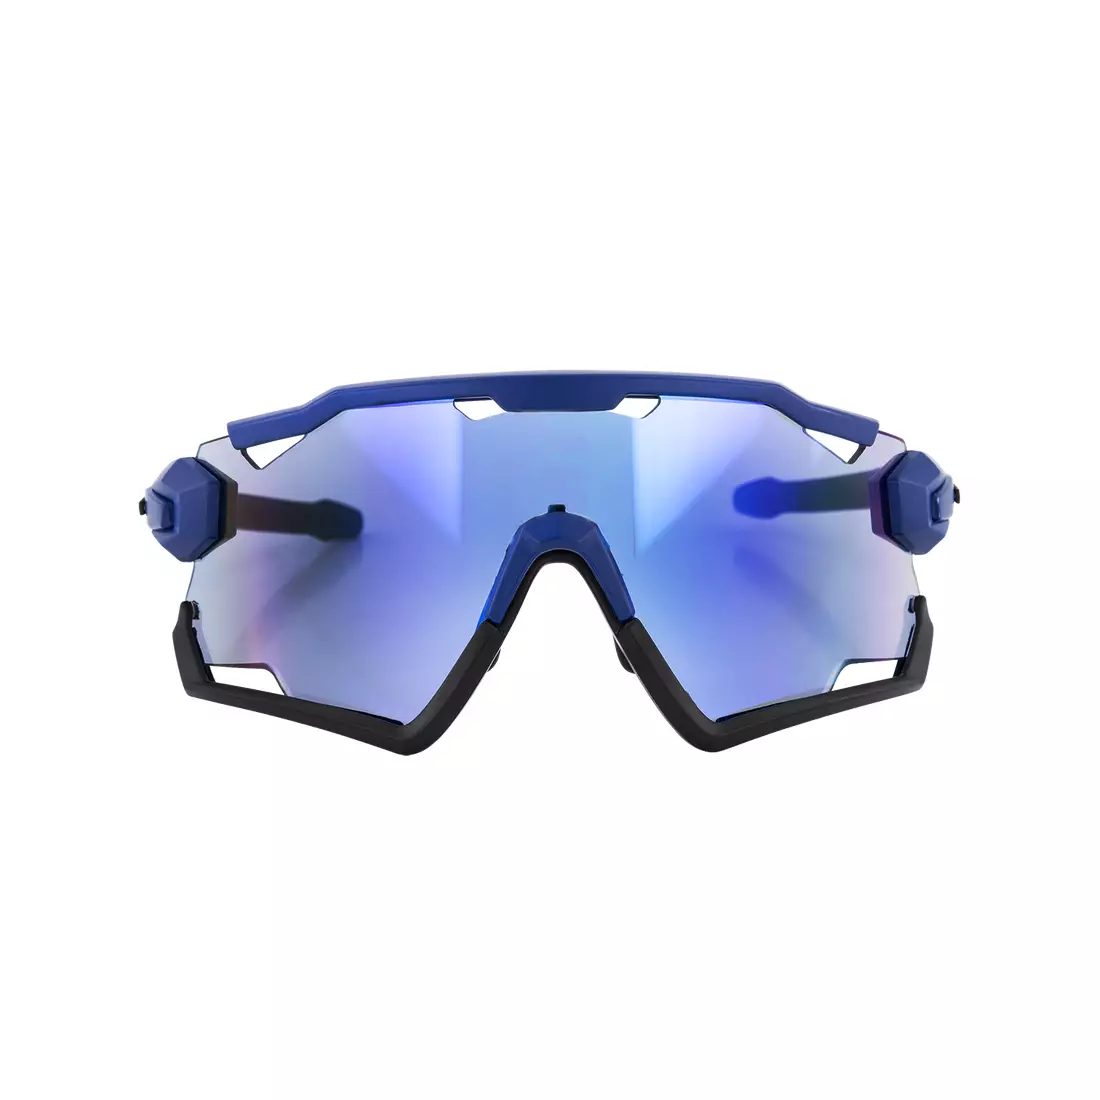 ROGELLI okulary sportowe z wymiennymi szkłami SWITCH niebieskie